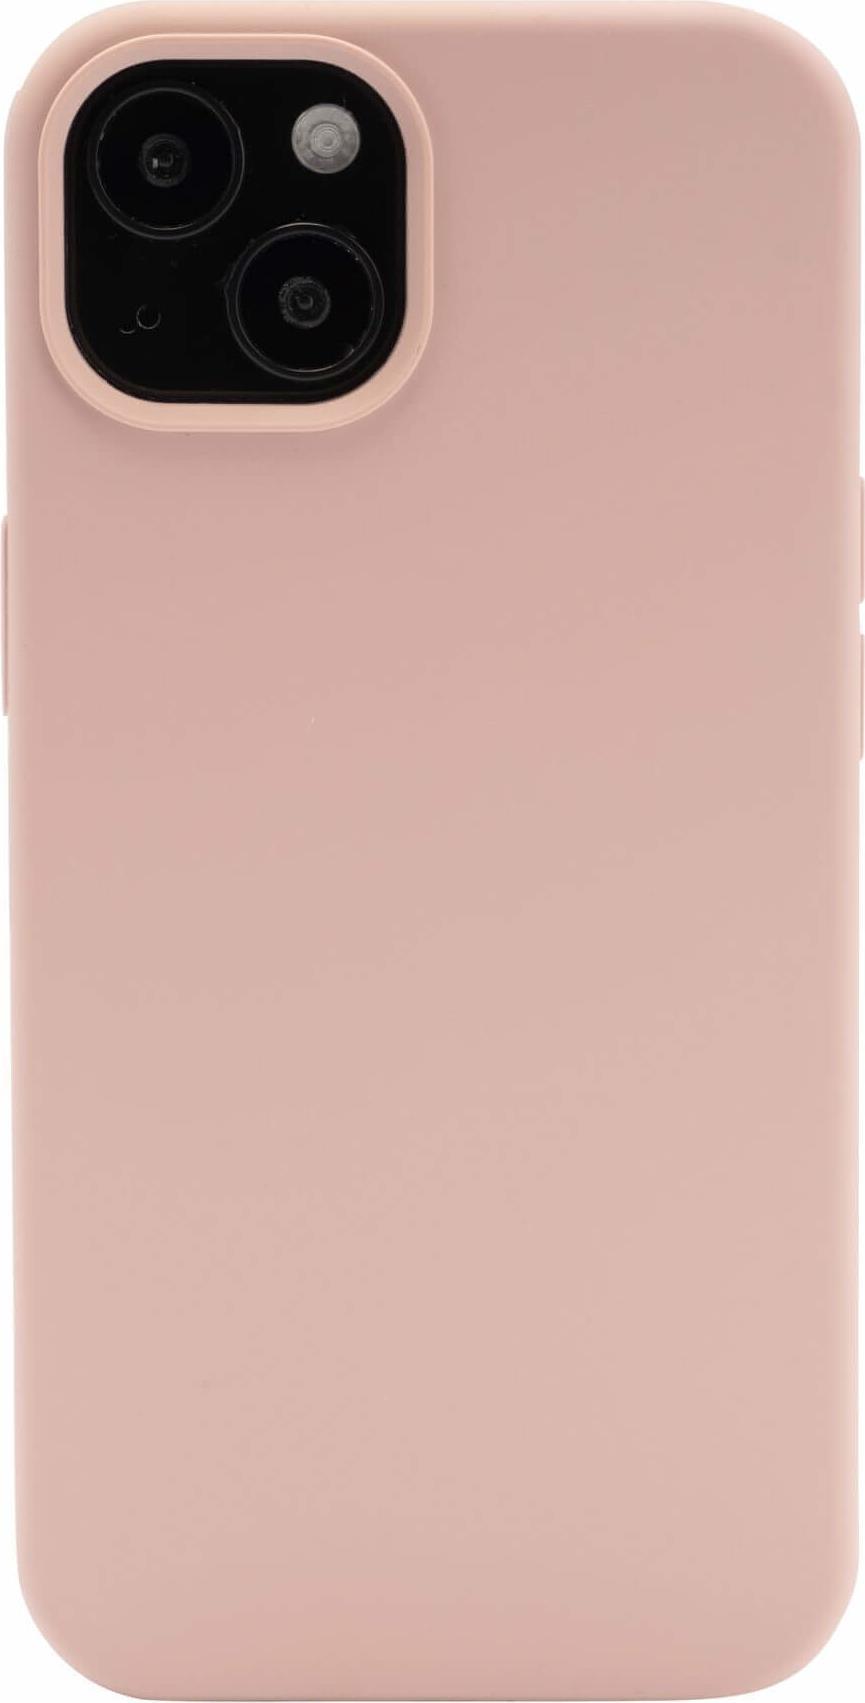 Menatwork Steglitz Handy-Schutzhülle 13,7 cm (5.4" ) Cover Pink - Sand (10773)